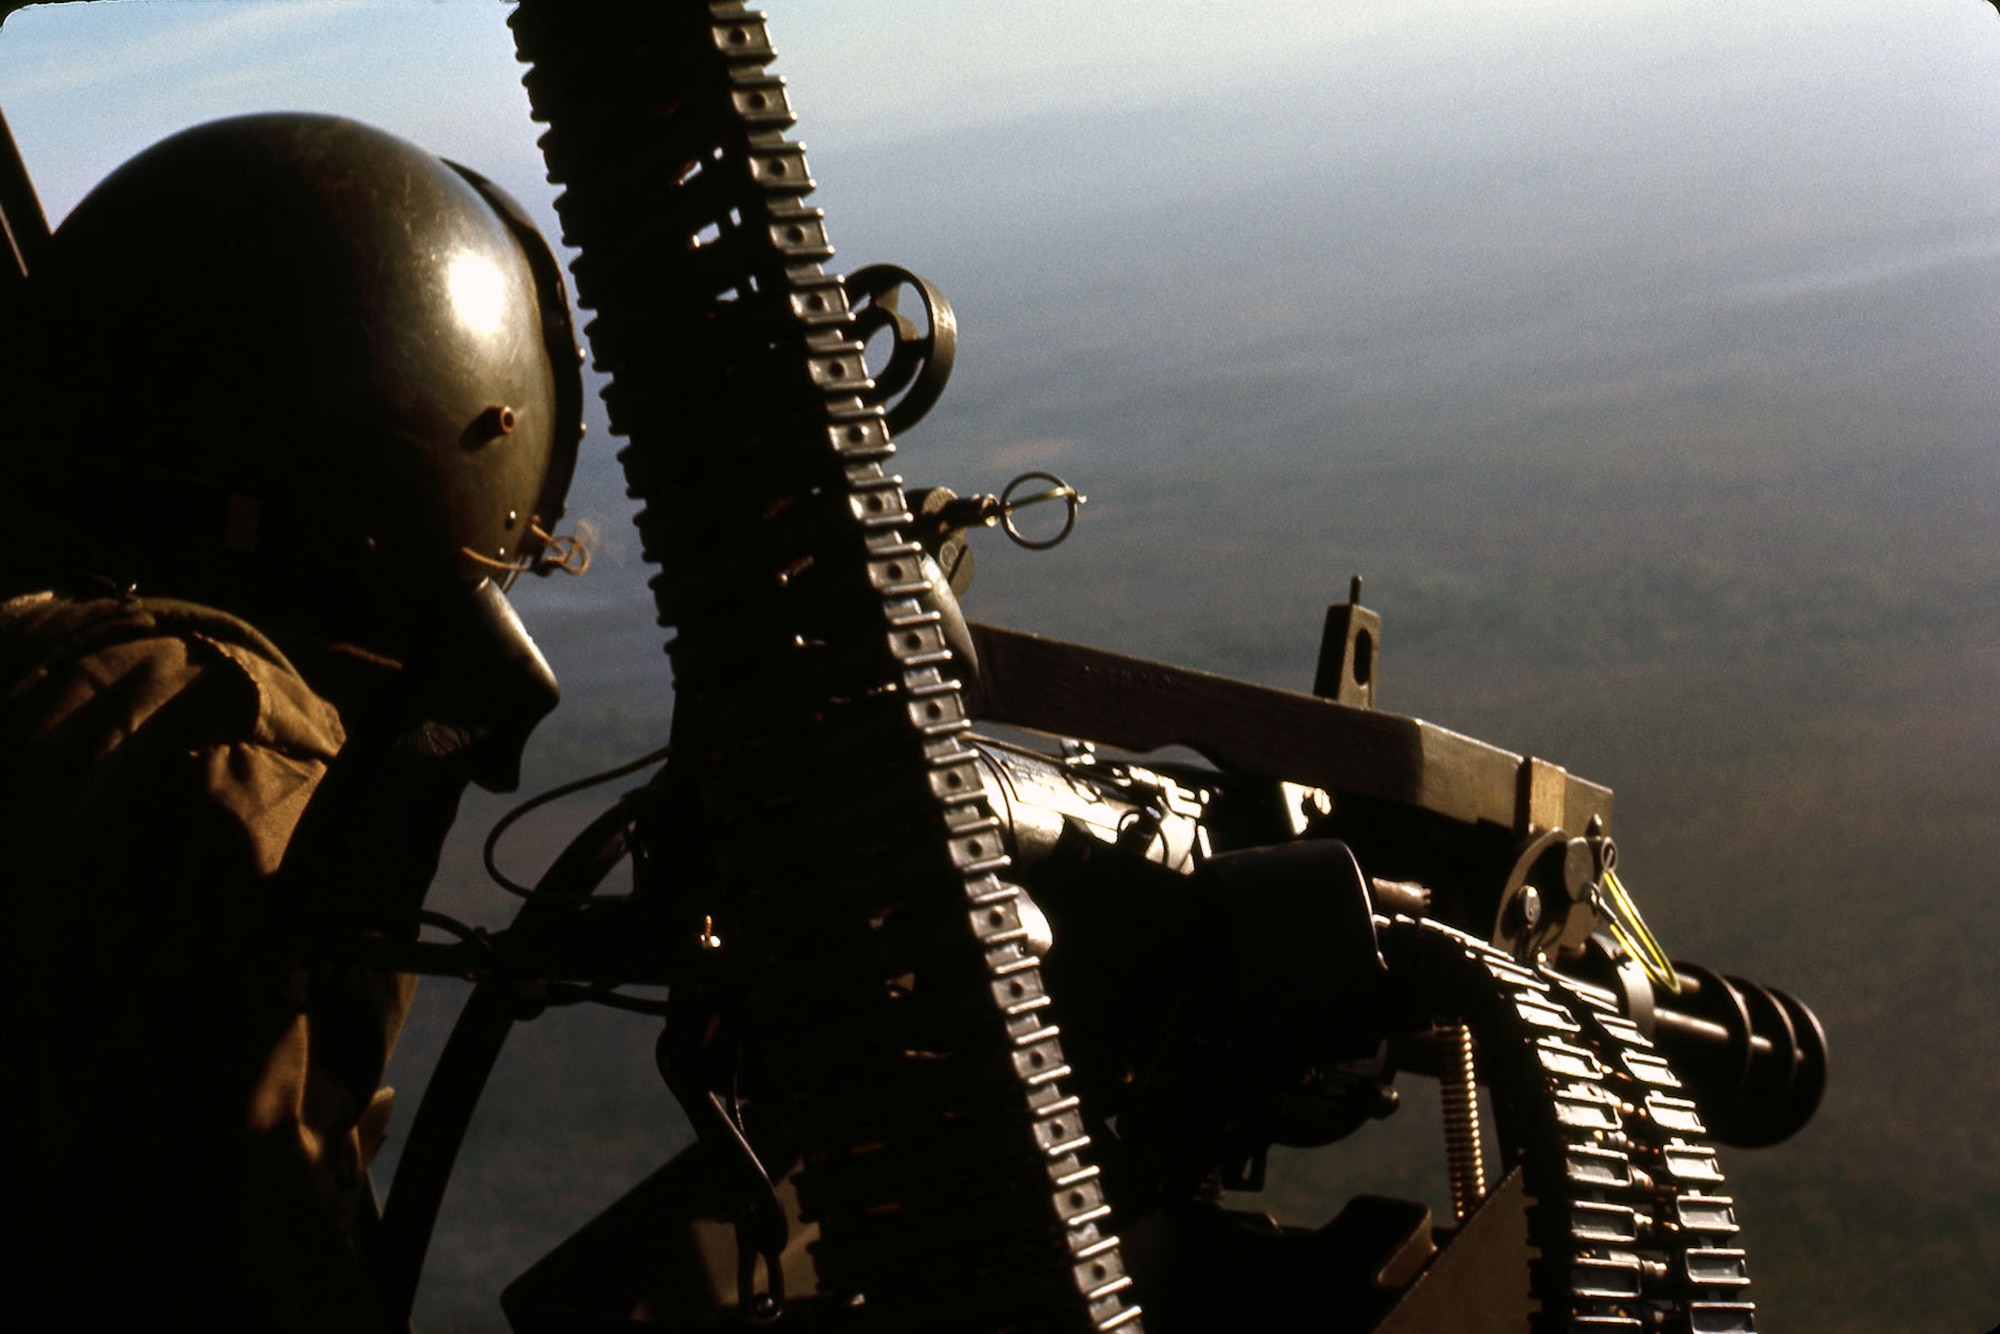 A UH-1 gunner manning a GAU-2 minigun that fired 7.62mm ammunition. (U.S. Air Force photo)